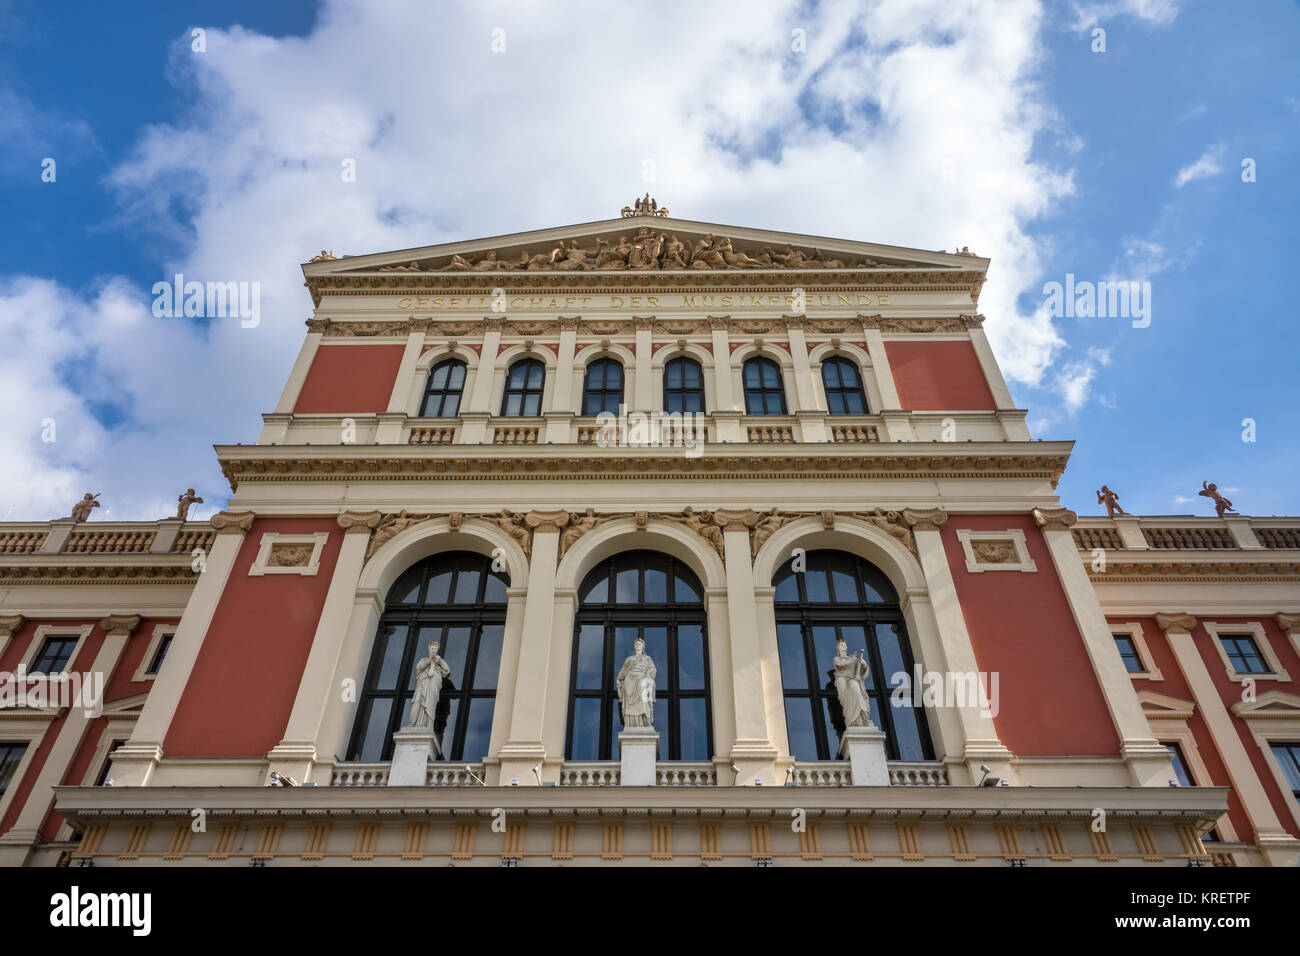 Wiener Musikverein, traditionsreiches Konzerthaus in Wien mit dem berühmten goldenen Saal Stock Photo